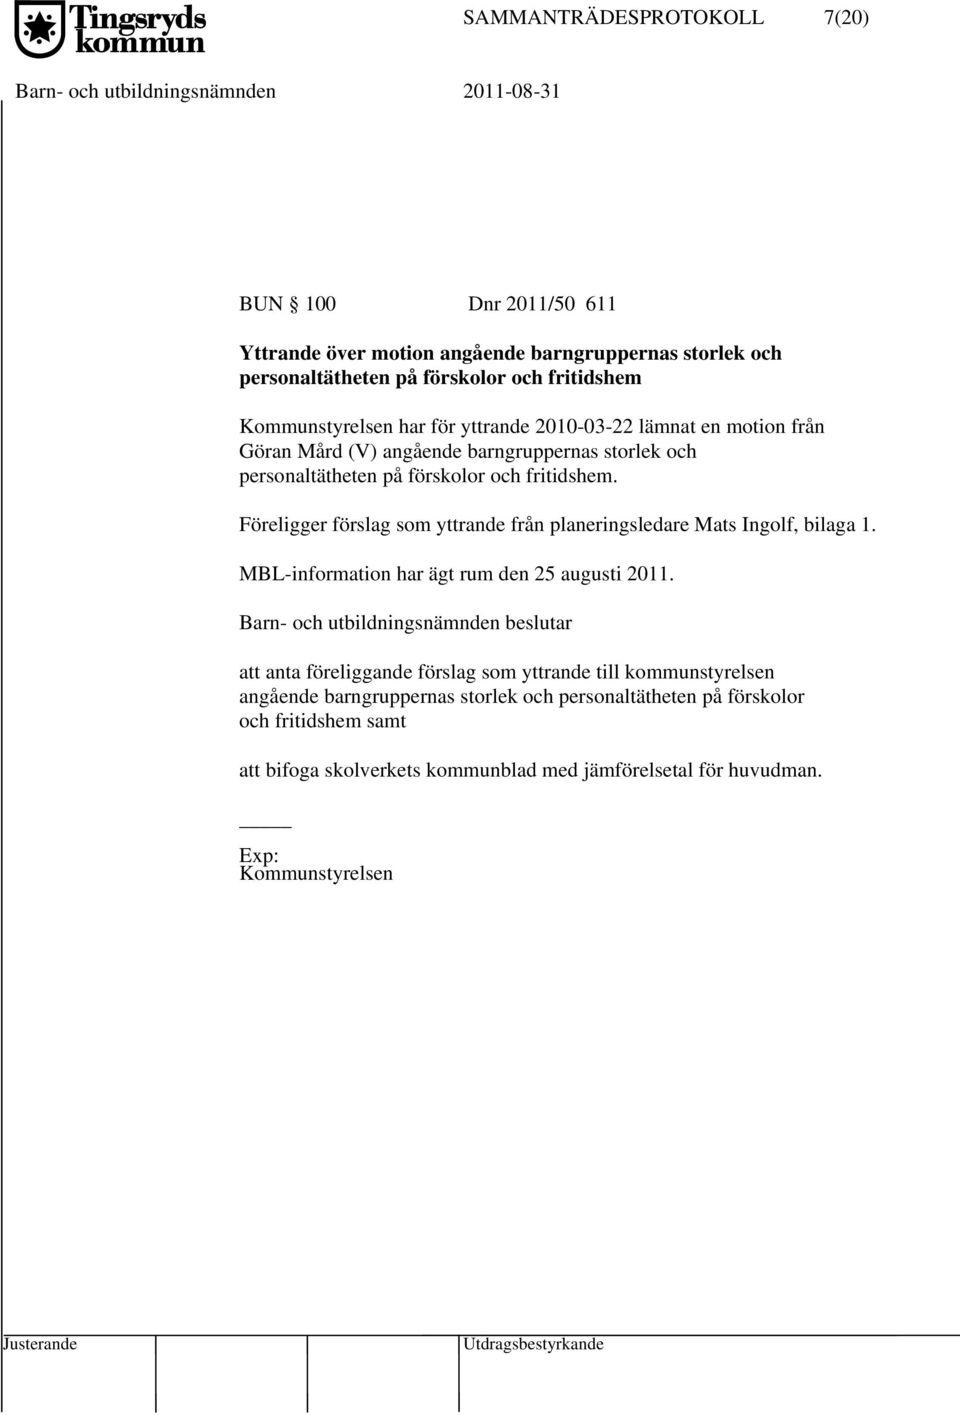 Föreligger förslag som yttrande från planeringsledare Mats Ingolf, bilaga 1. MBL-information har ägt rum den 25 augusti 2011.